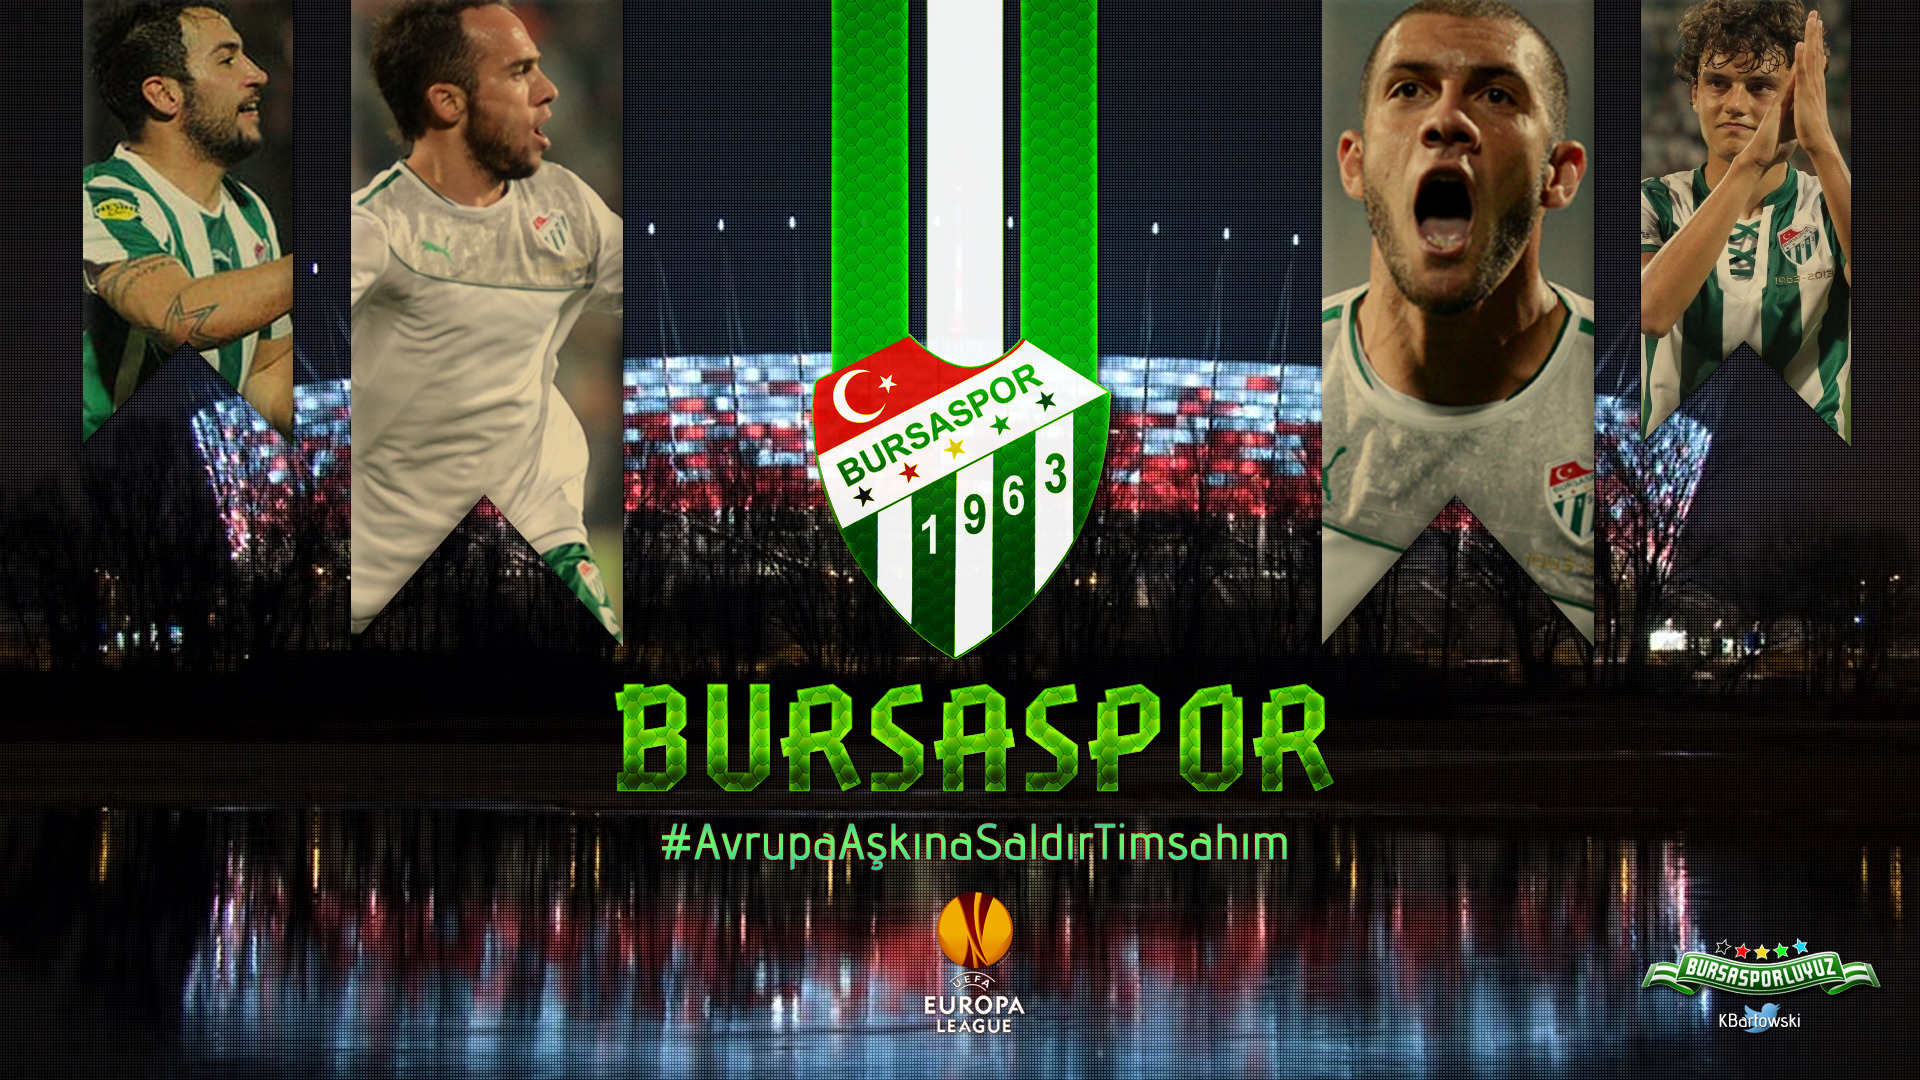 Bursaspor, UEFA, Turkey, Soccer Pitches, Soccer Wallpaper